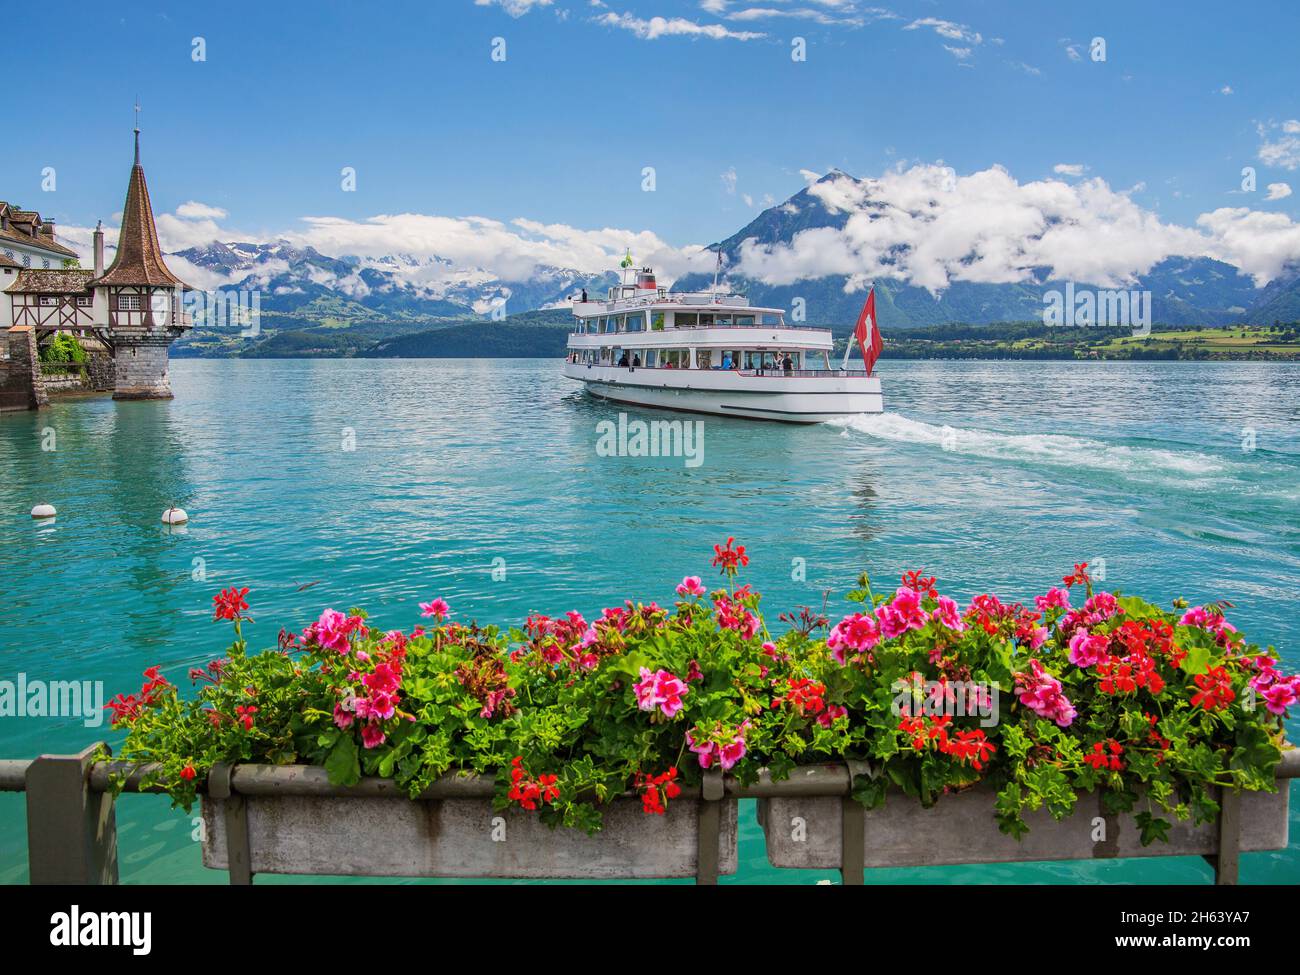 torrette del castello di oberhofen sulla riva del lago con barca da escursione, lago thun, alpi bernesi, oberland bernese, cantone di berna, svizzera Foto Stock